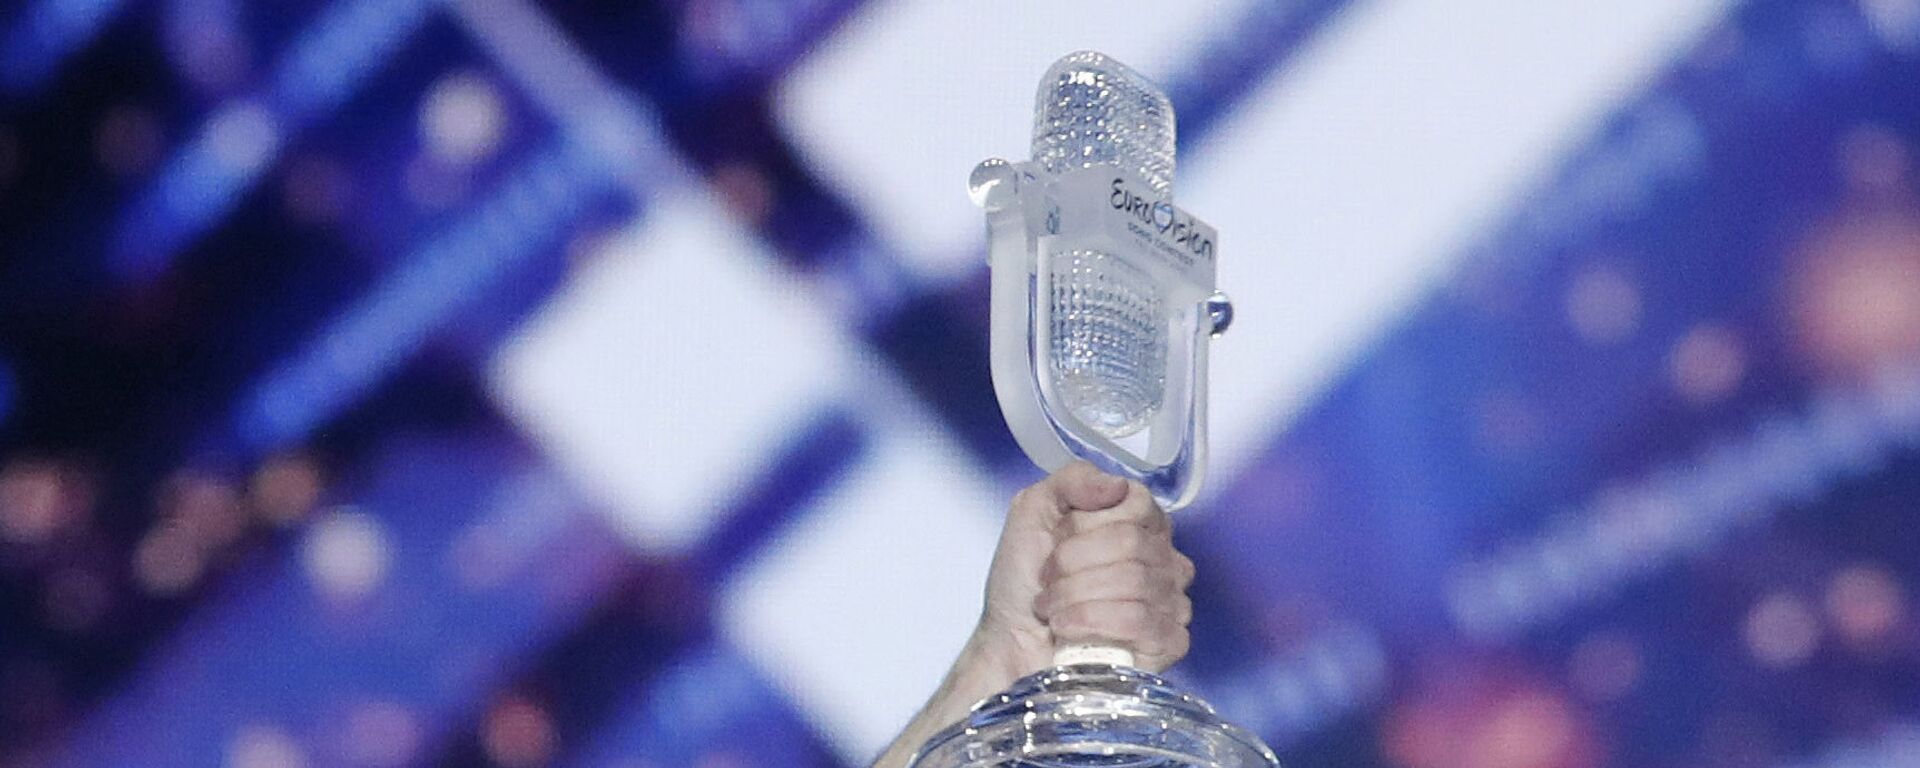 Микрофон с конкурса Евровидение - Sputnik Таджикистан, 1920, 19.05.2021